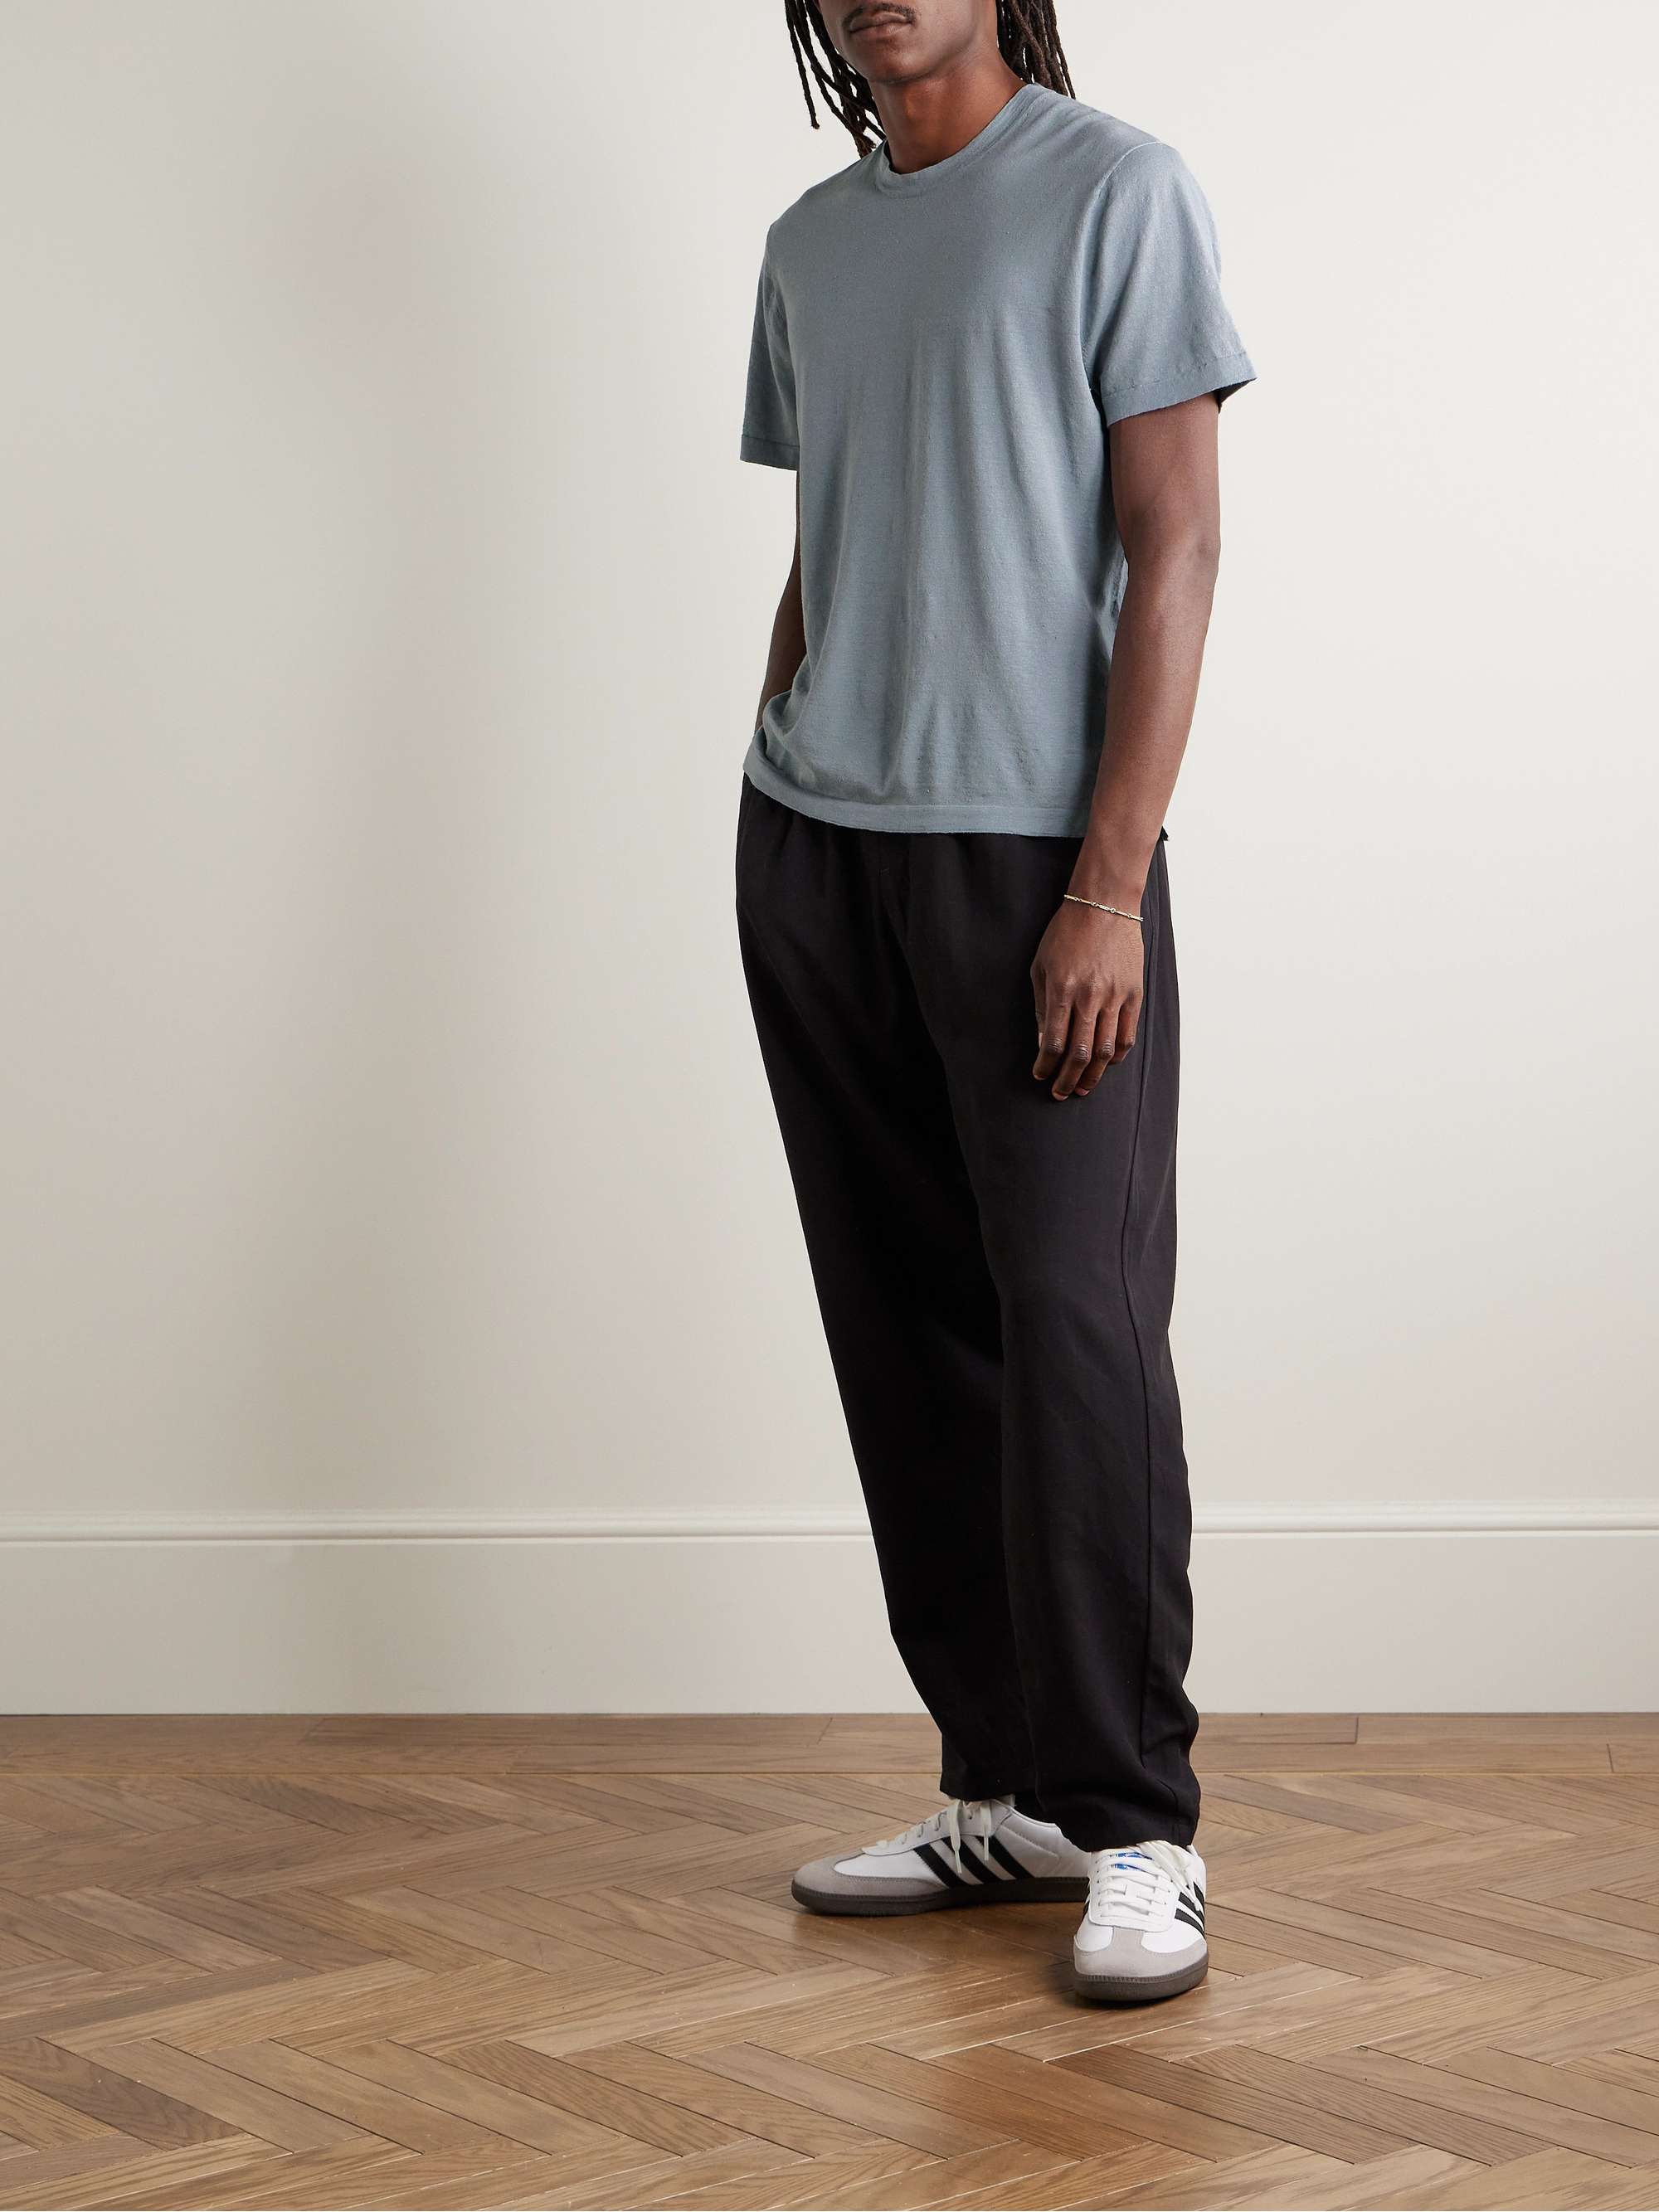 JAMES PERSE Linen-Blend Jersey T-Shirt for Men | MR PORTER